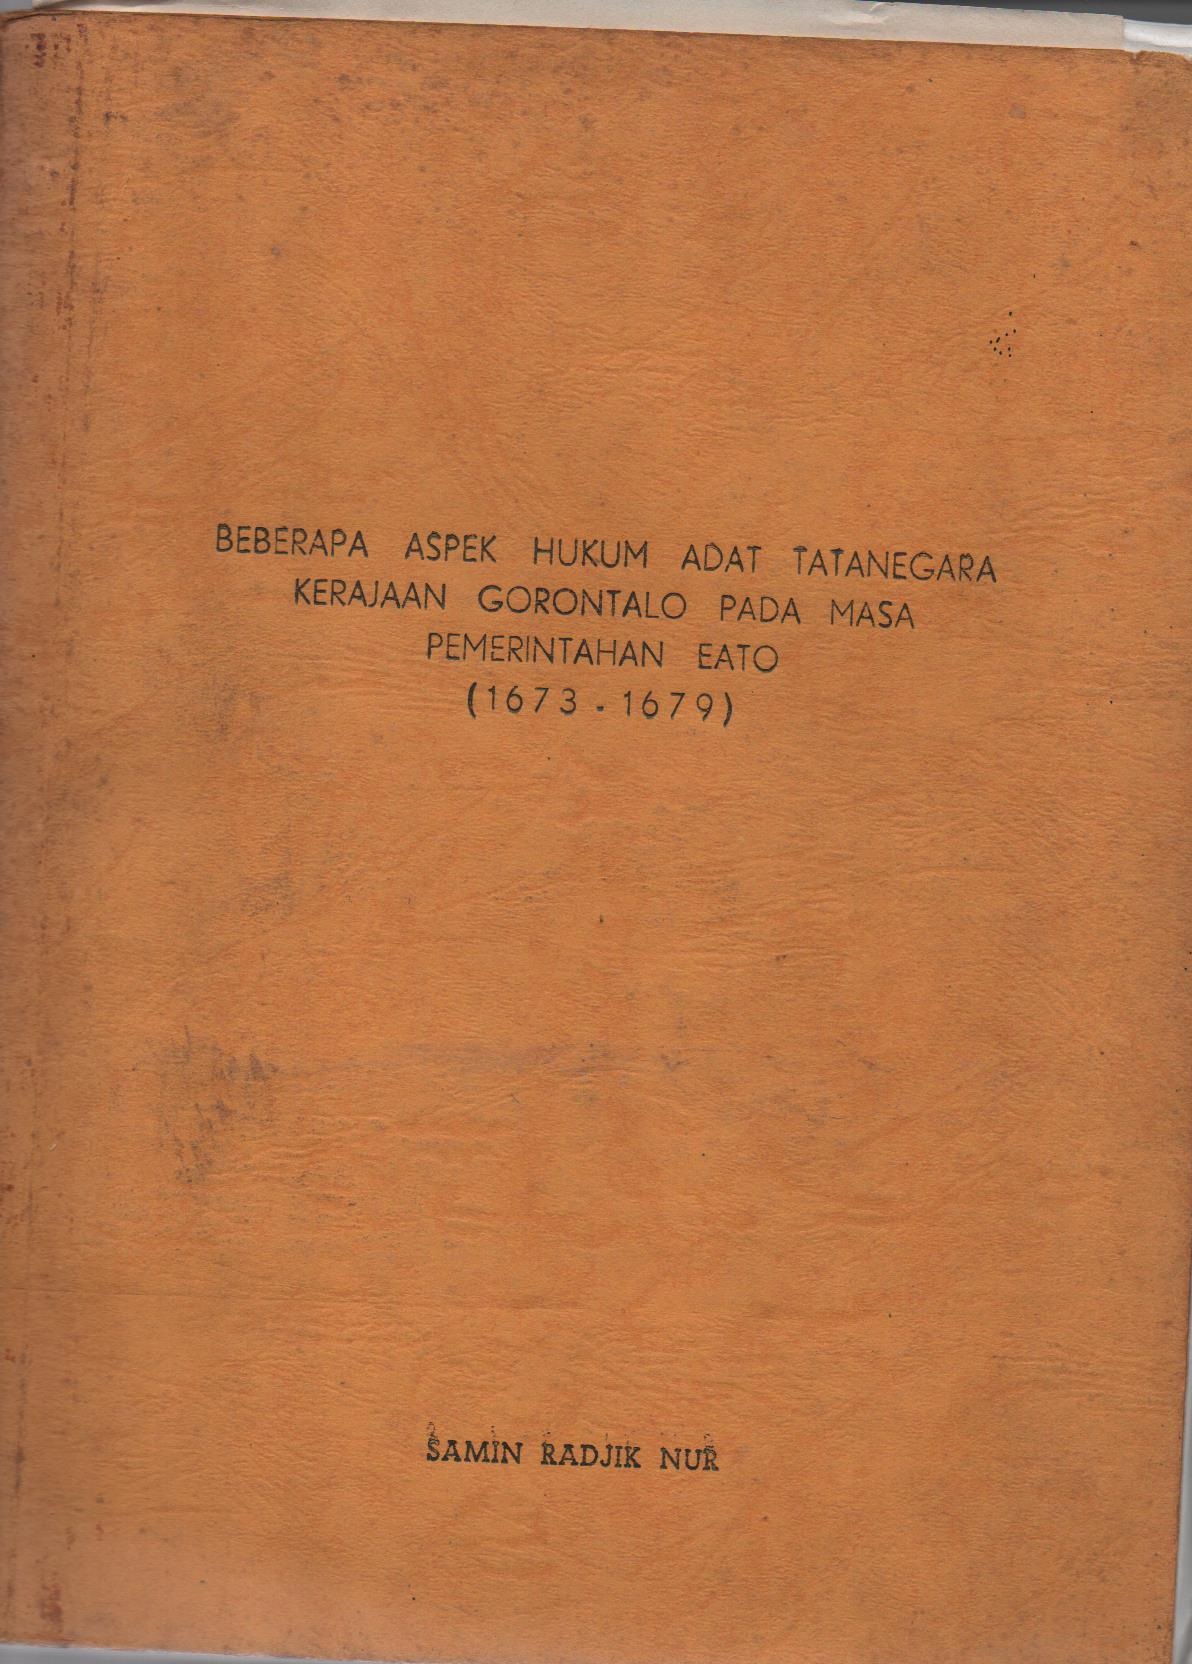 Beberapa Aspek Hukum Adat Tatanegara Kerajaan Gorontalo Pada Masa Pemerintahan EATO (1673-1679)